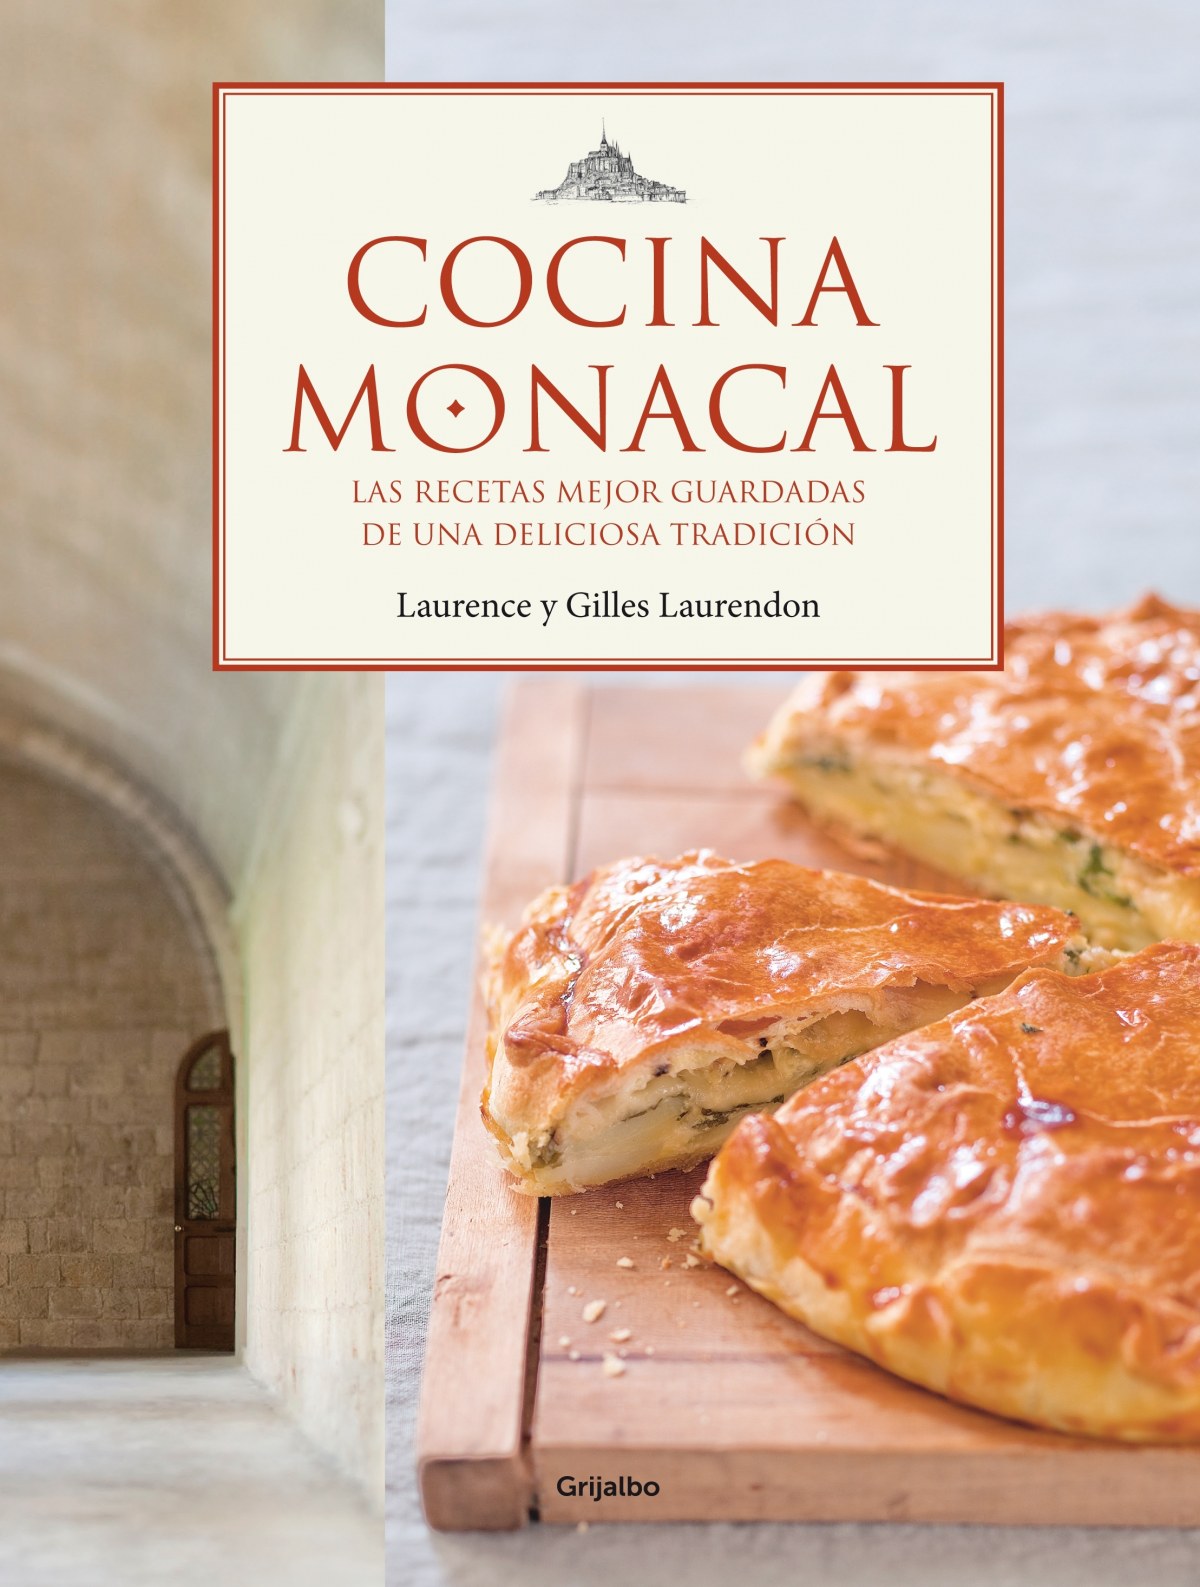 Cocina monacal - Laurendon,Laurence Y Gilles/Boutin,Richa